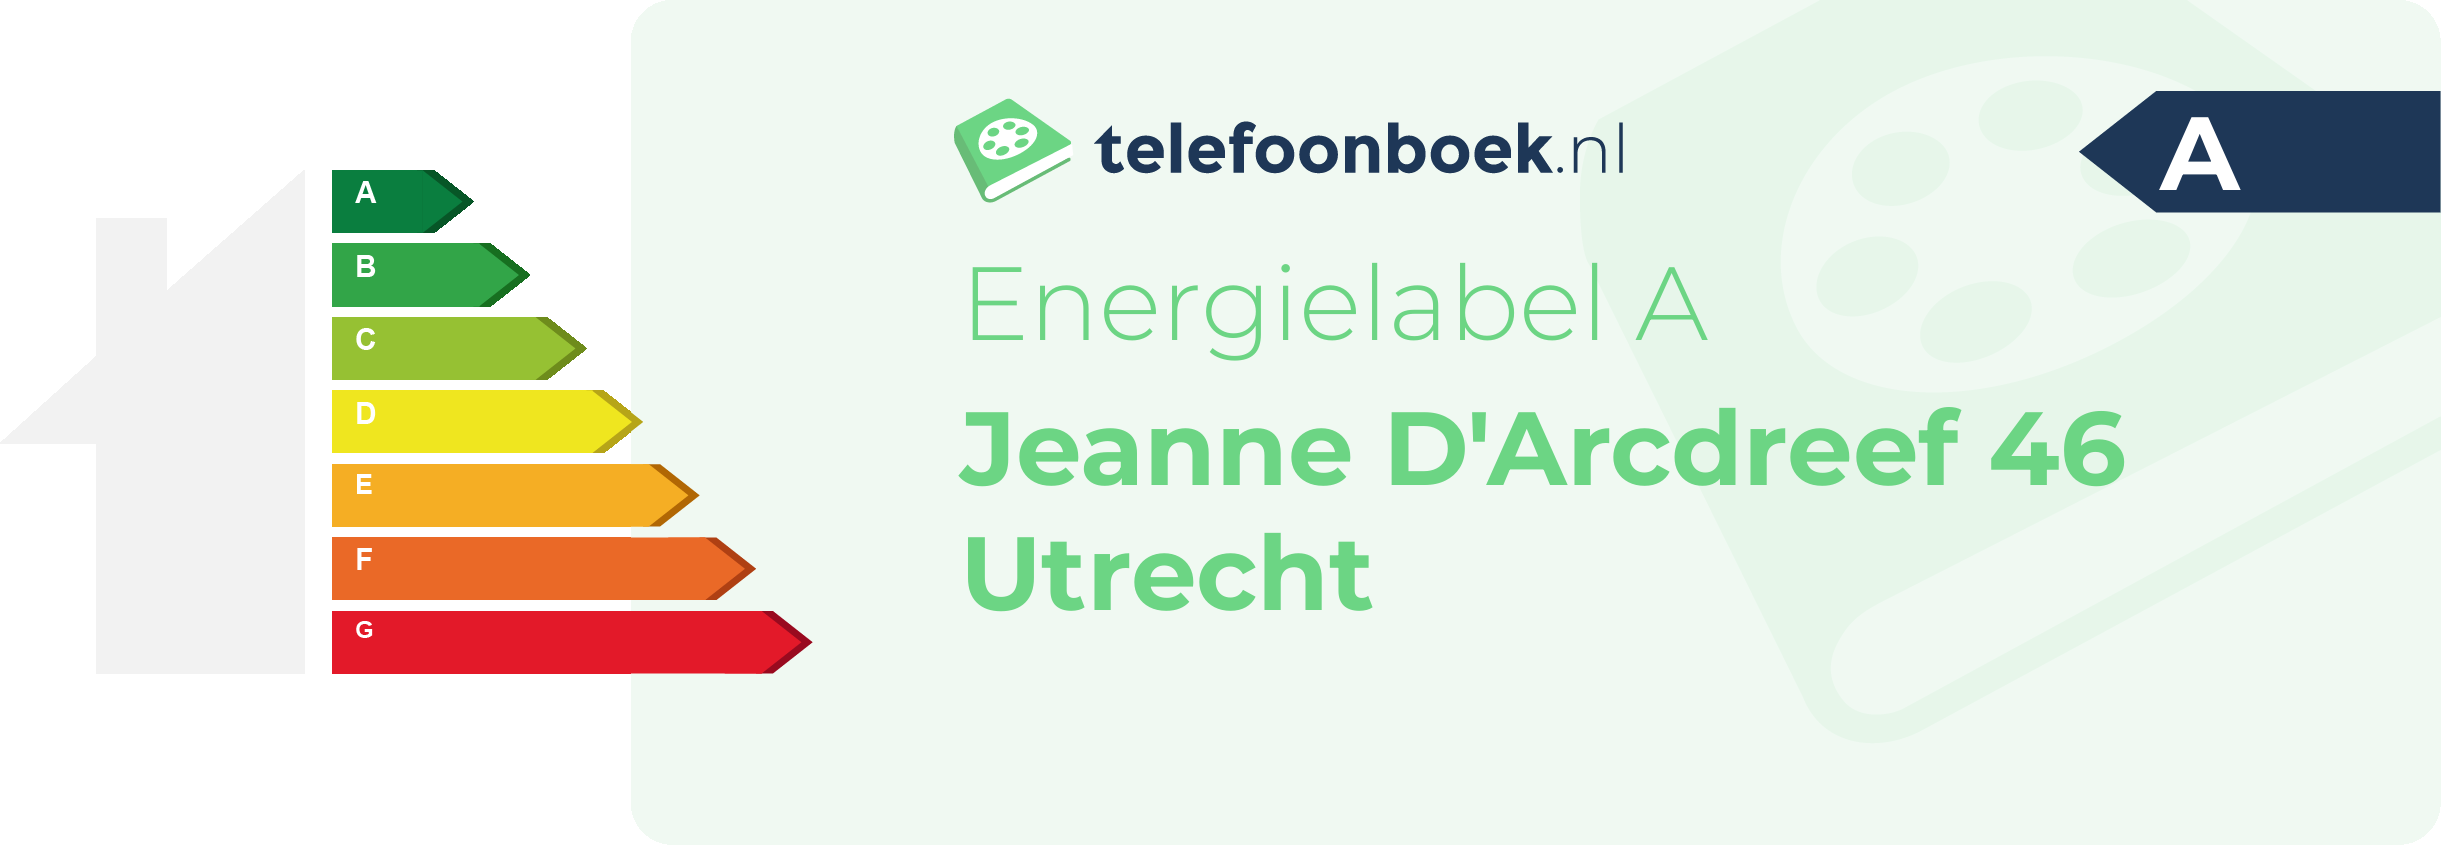 Energielabel Jeanne D'Arcdreef 46 Utrecht